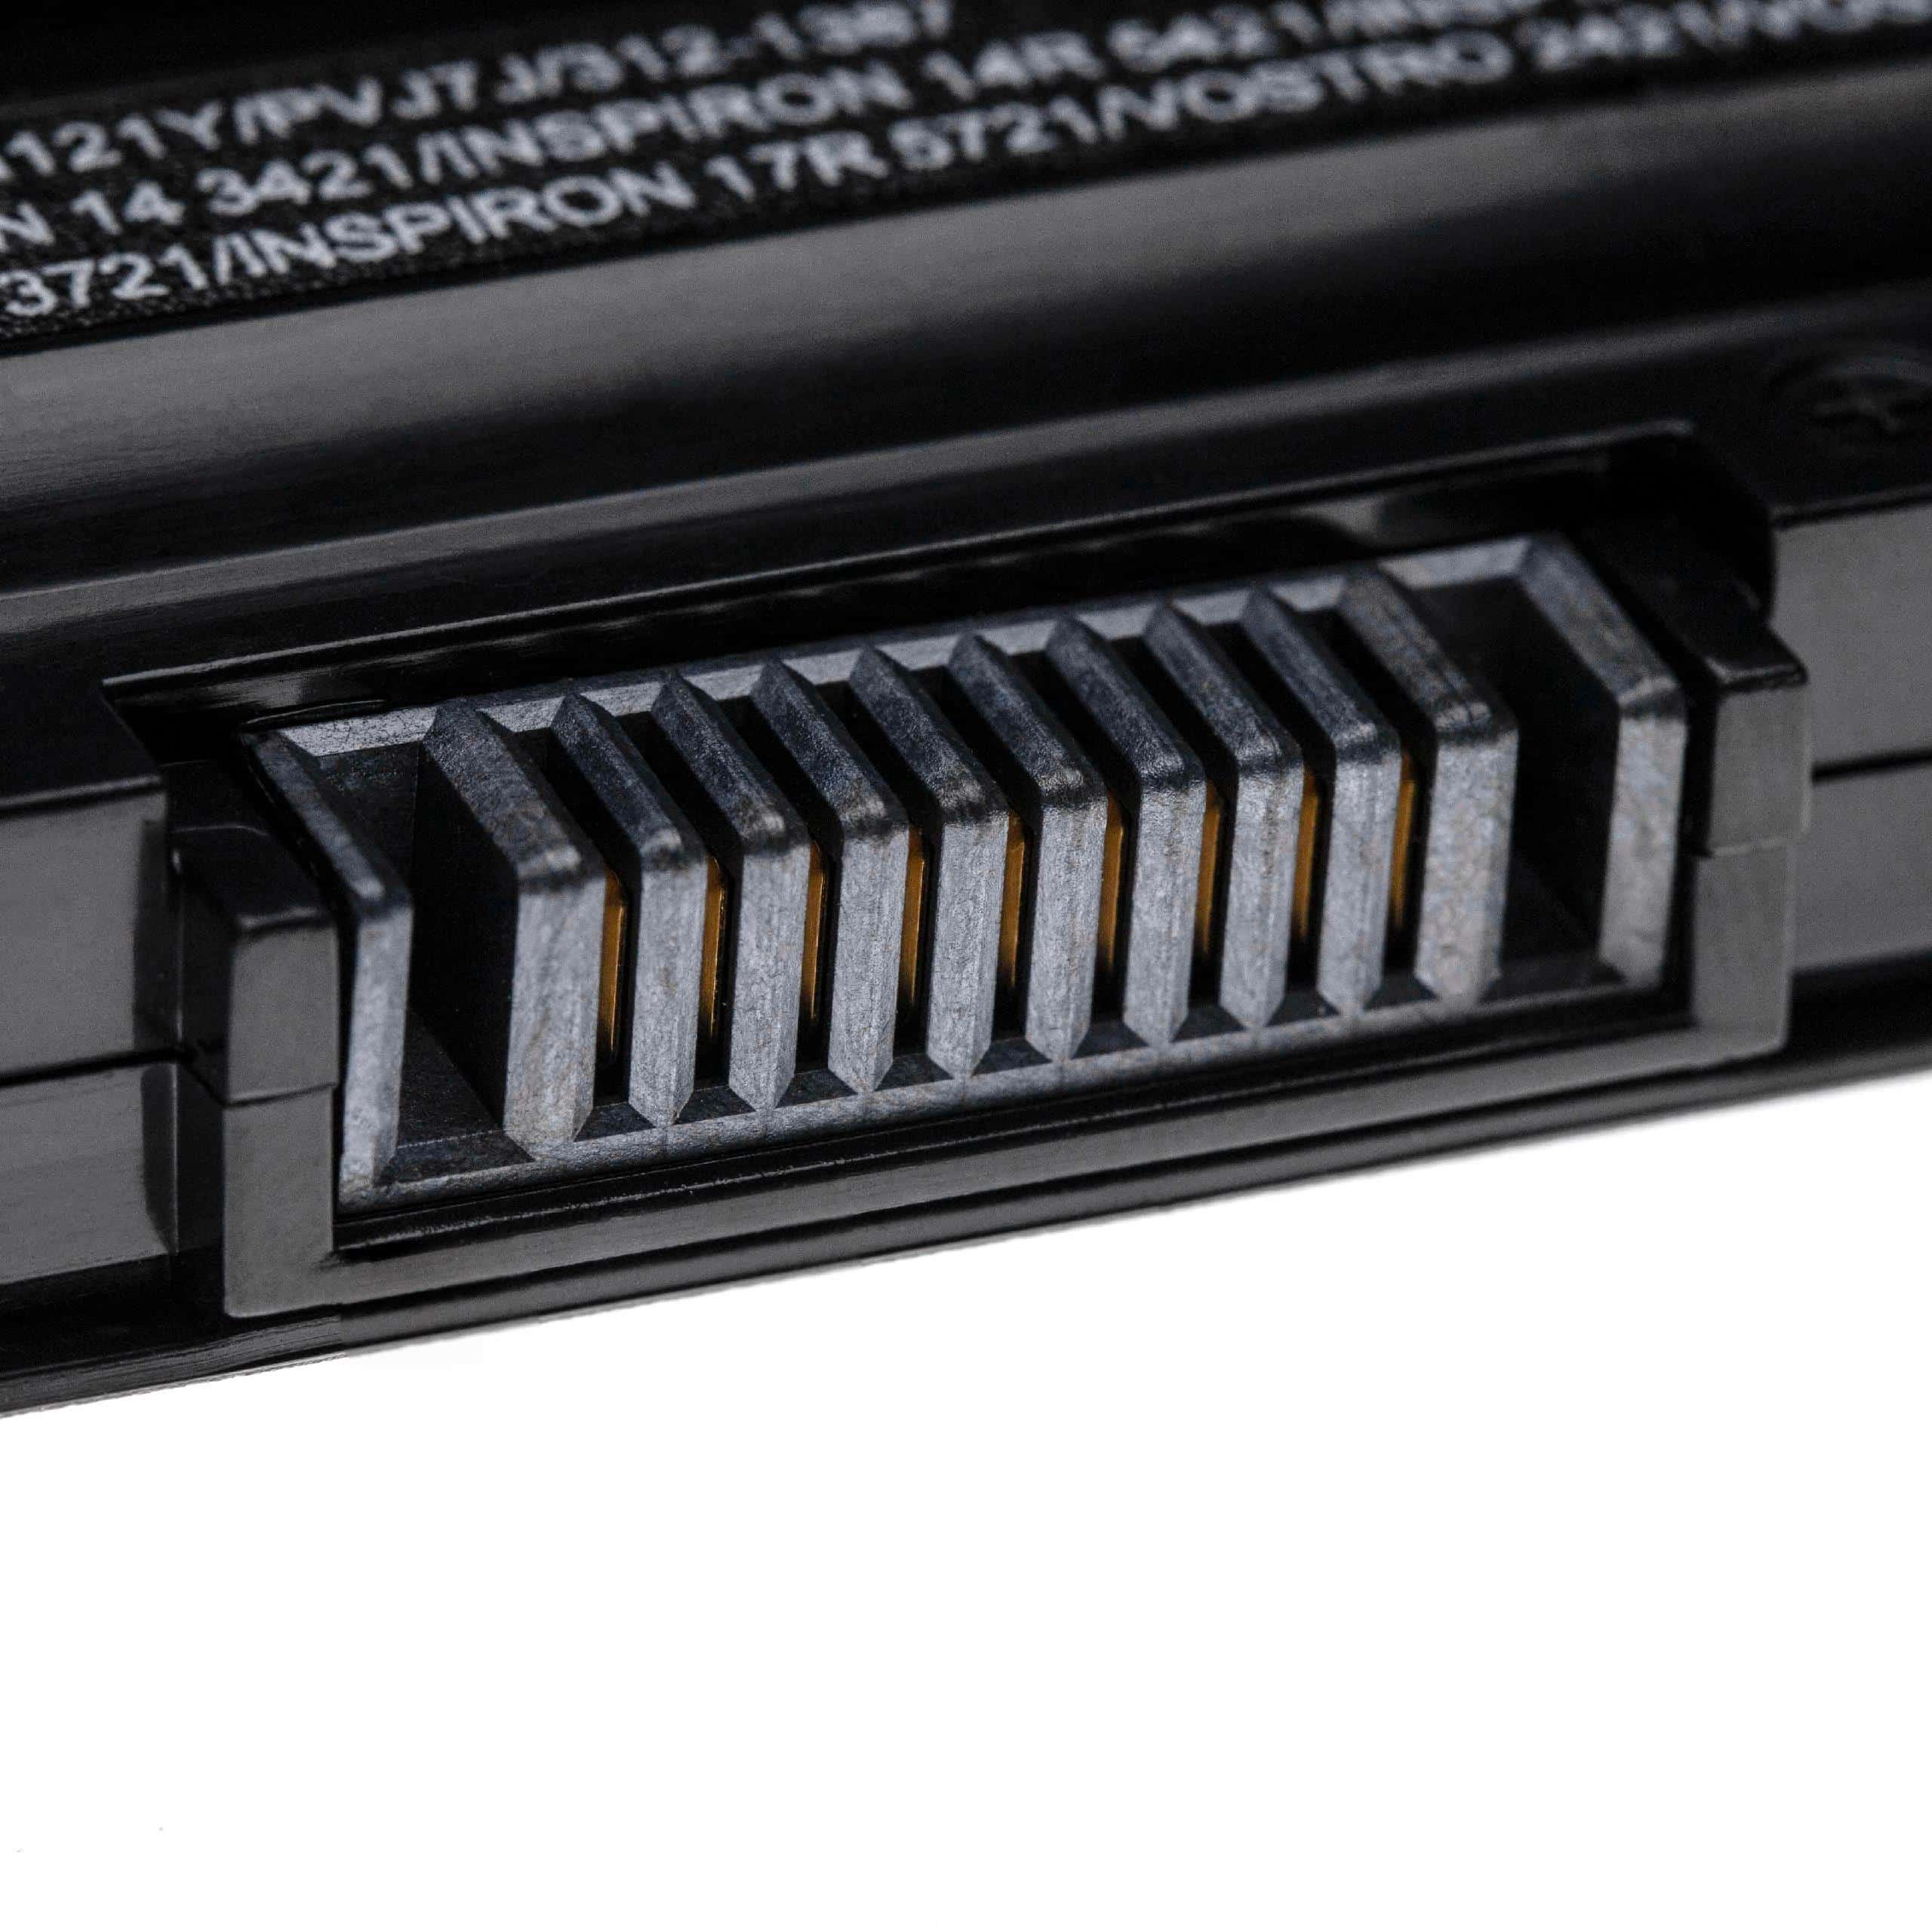 Batterie remplace Dell 312-1387, 24DRM, 0MF69 pour ordinateur portable - 5200mAh 11,1V Li-polymère, noir